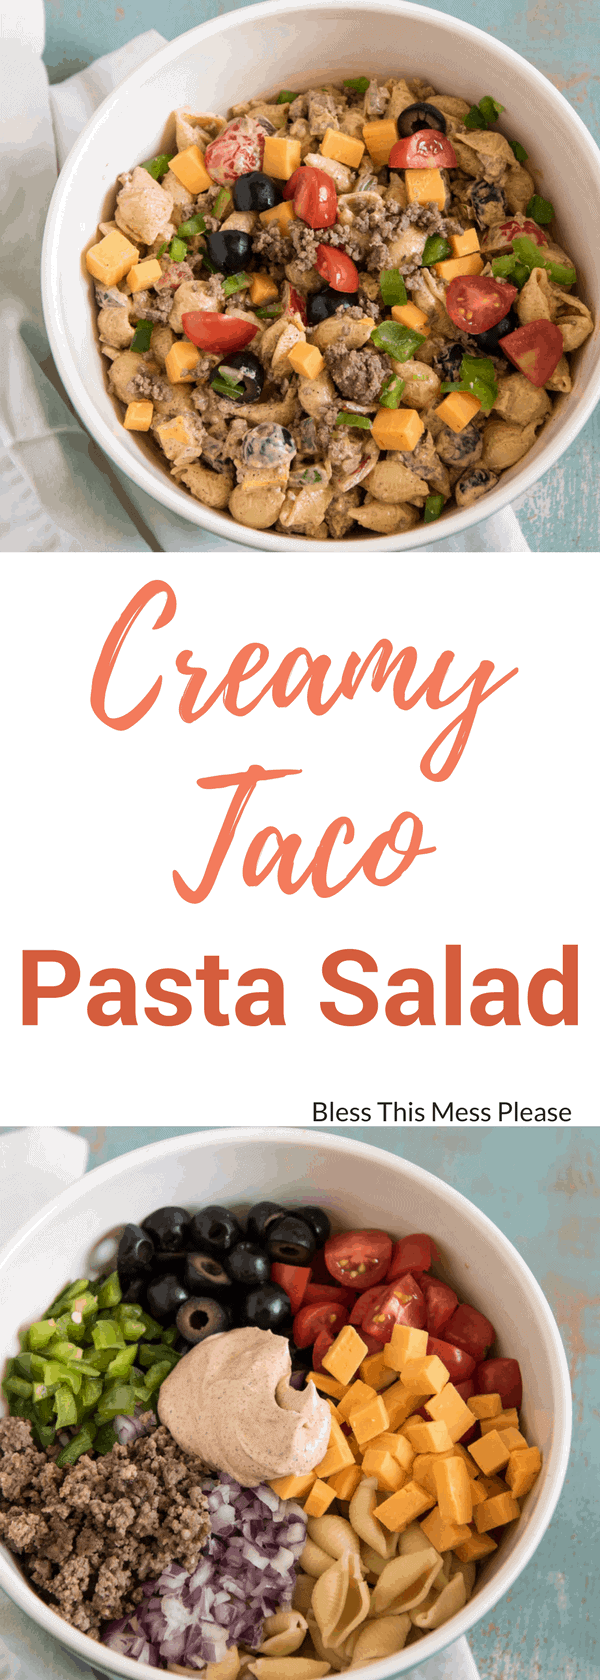 Creamy Taco Pasta Salad